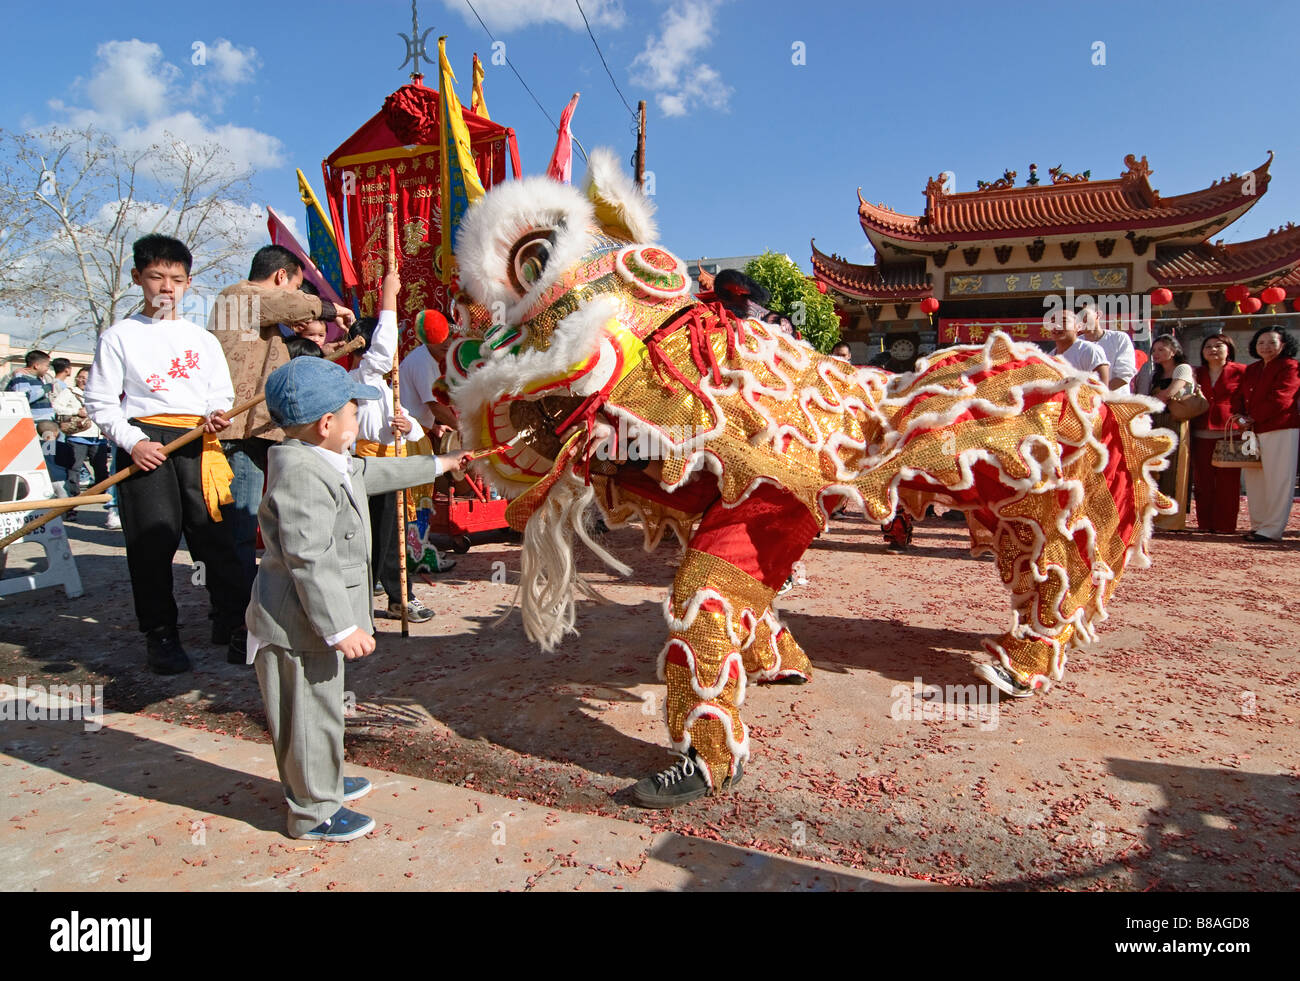 Junge Löwen Tänzer ein rotes Kuvert Geschenk geben. Chinesische Löwen Tänzer während einer Feier. Stockfoto